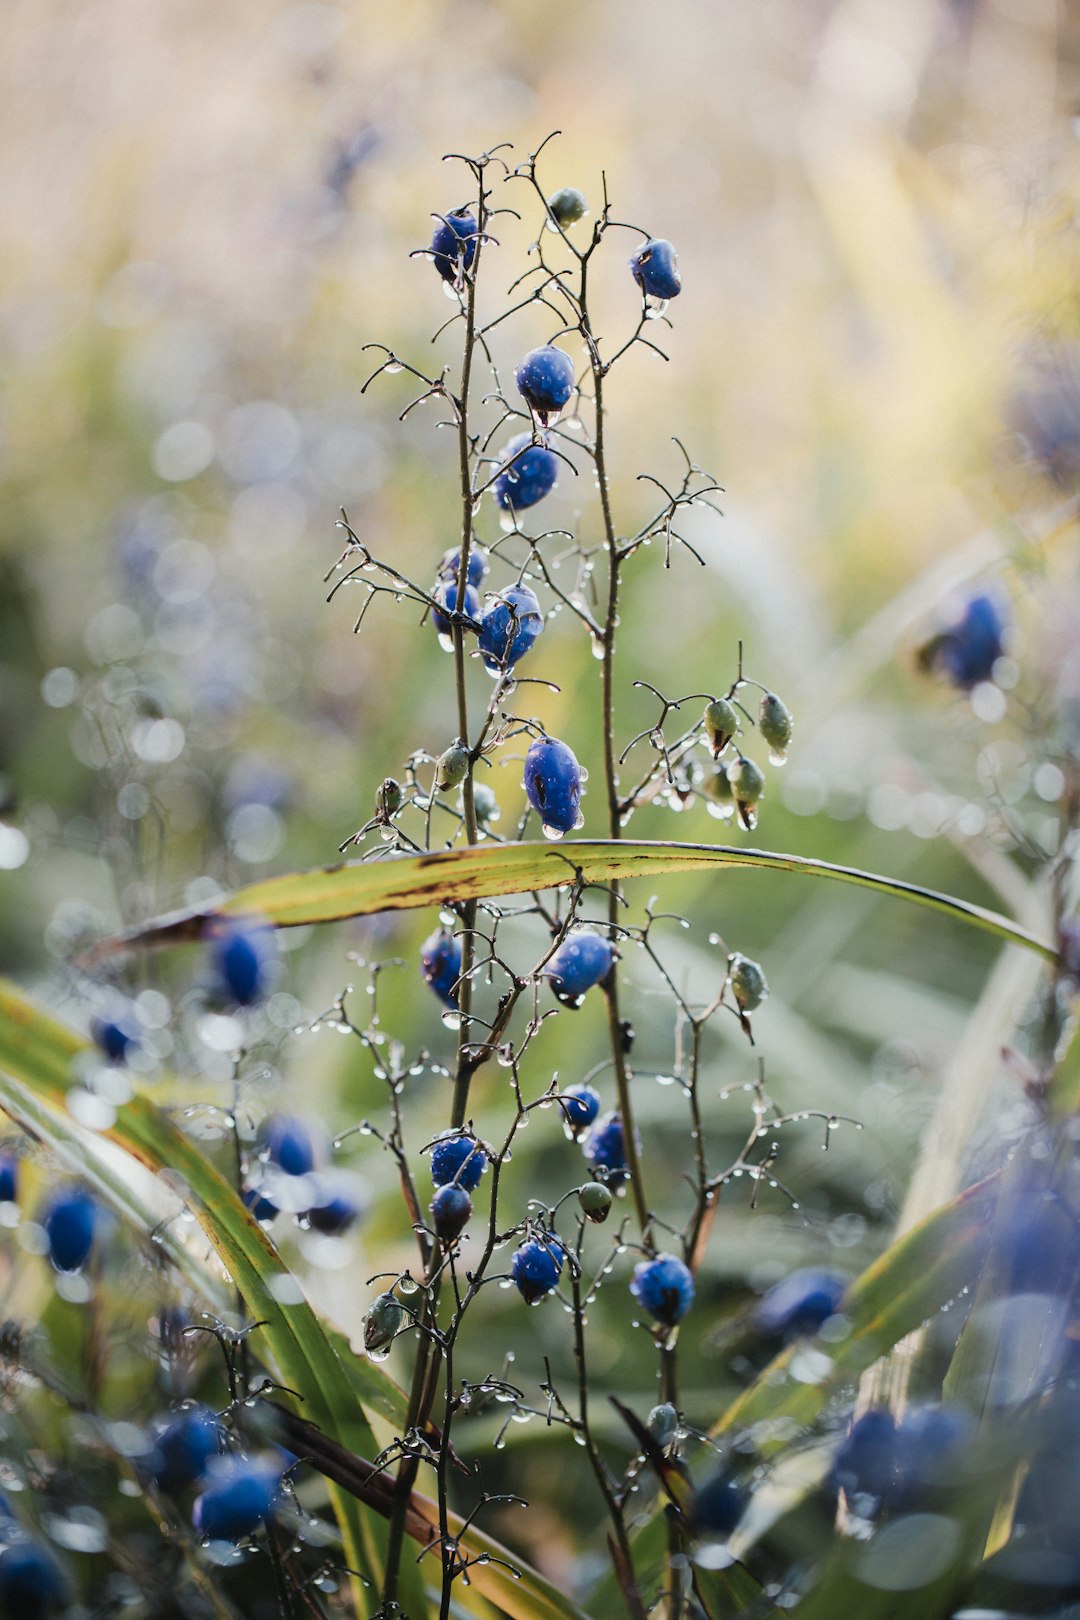 blue berries on brown stem